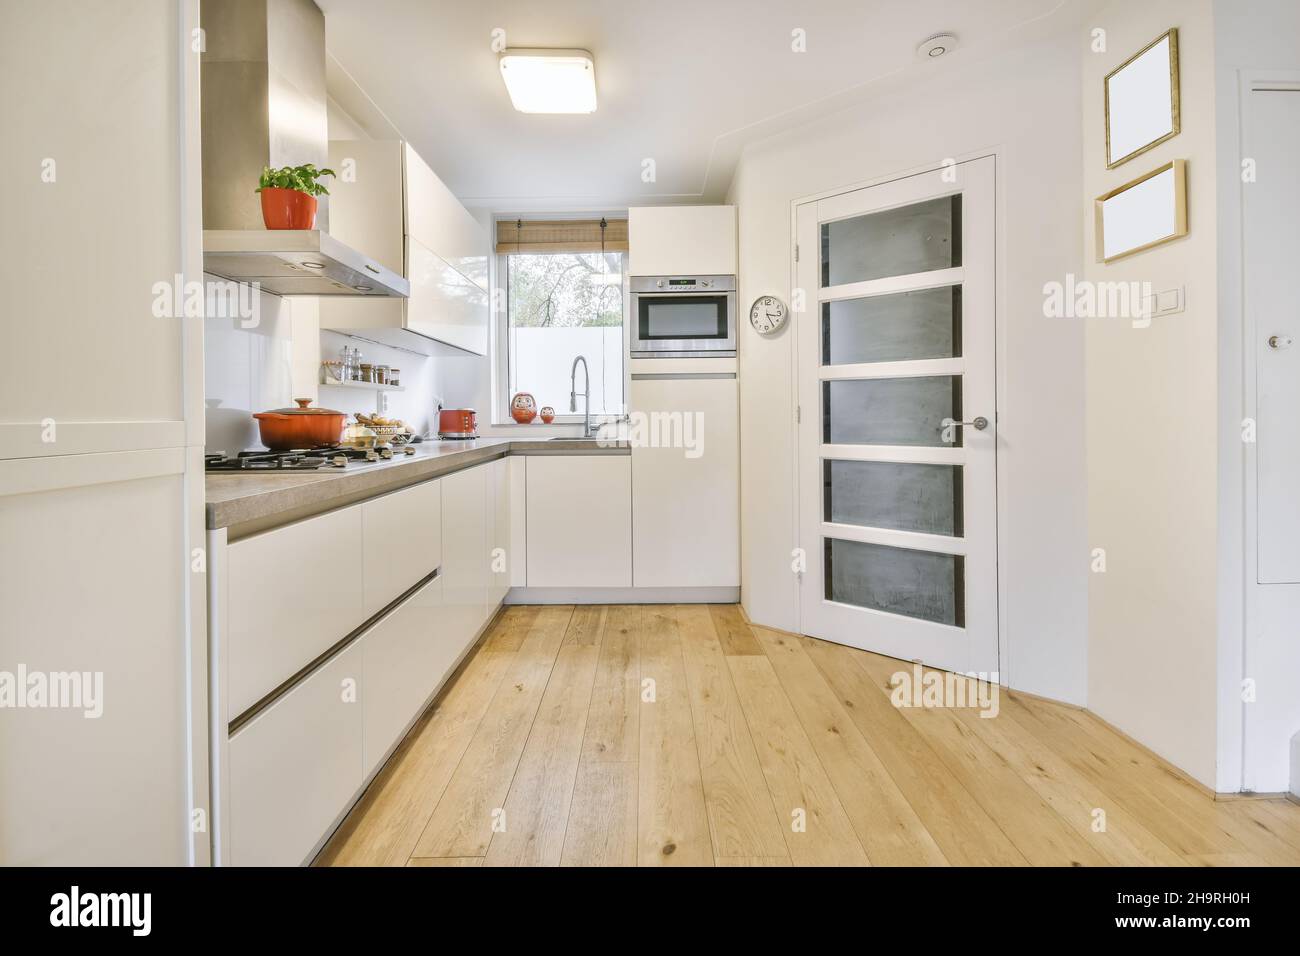 Accogliente cucina con mobili bianchi e pavimenti in legno Foto Stock